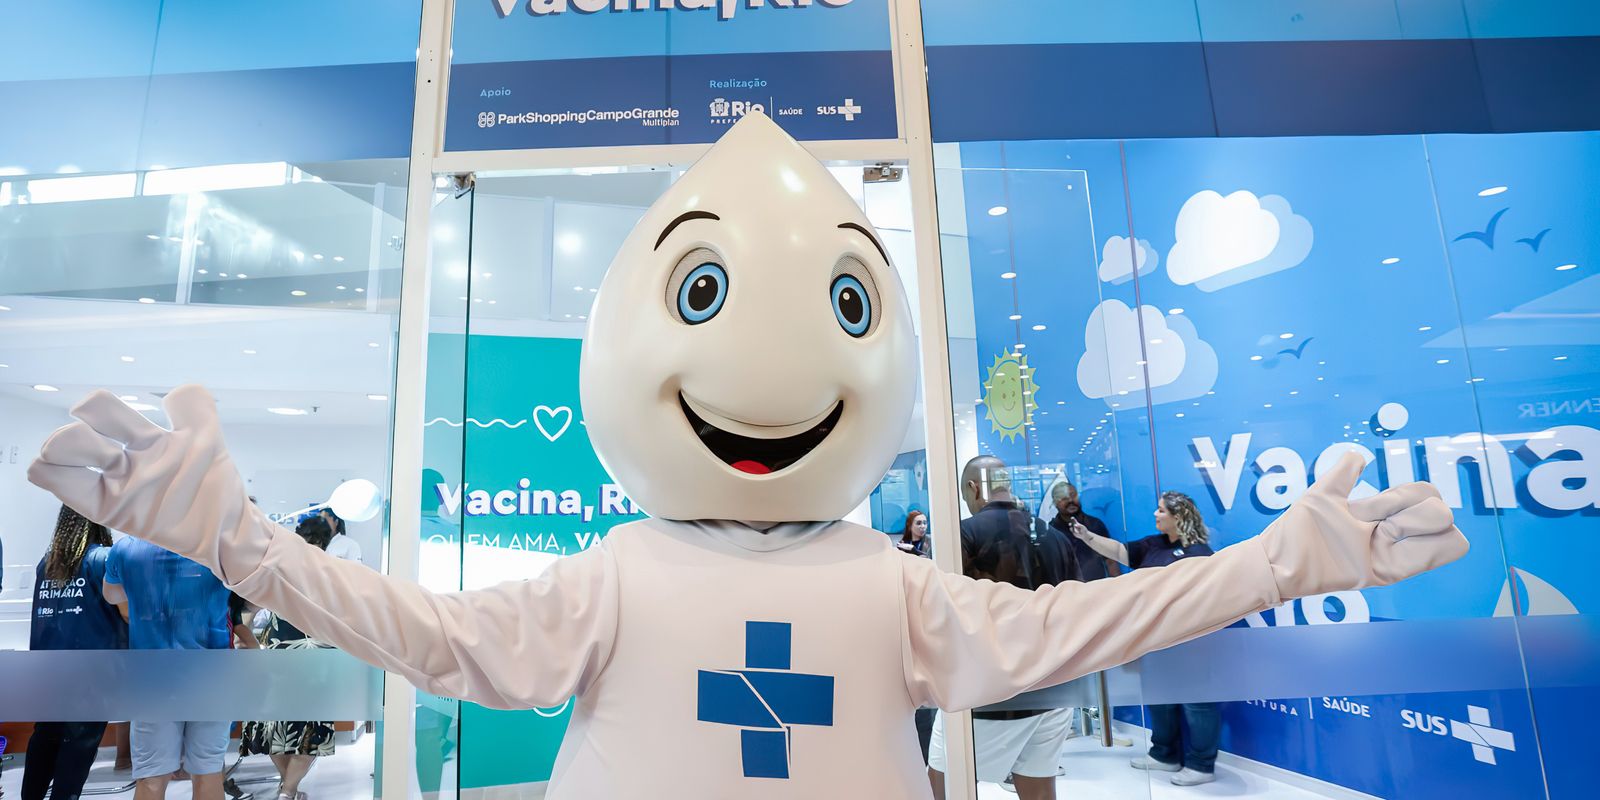 Saúde opens vaccination concept store in Rio shopping center